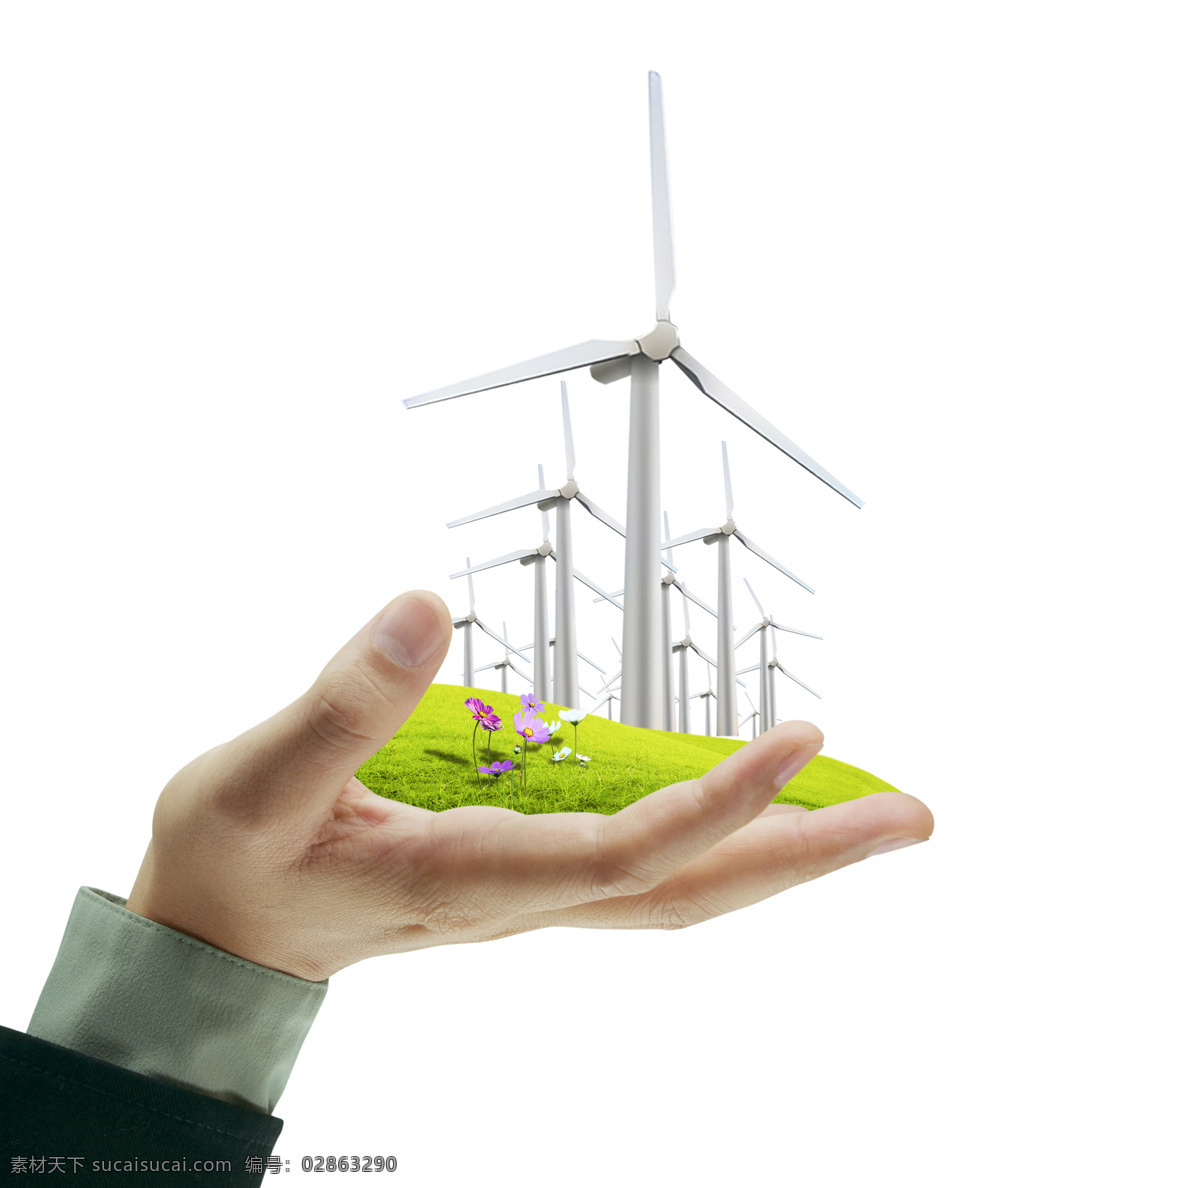 风能发电 风能 风力 风车 发电 蓝天 科技 能源 环保 现代科技 手心 里 草地 手 其他类别 生活百科 白色